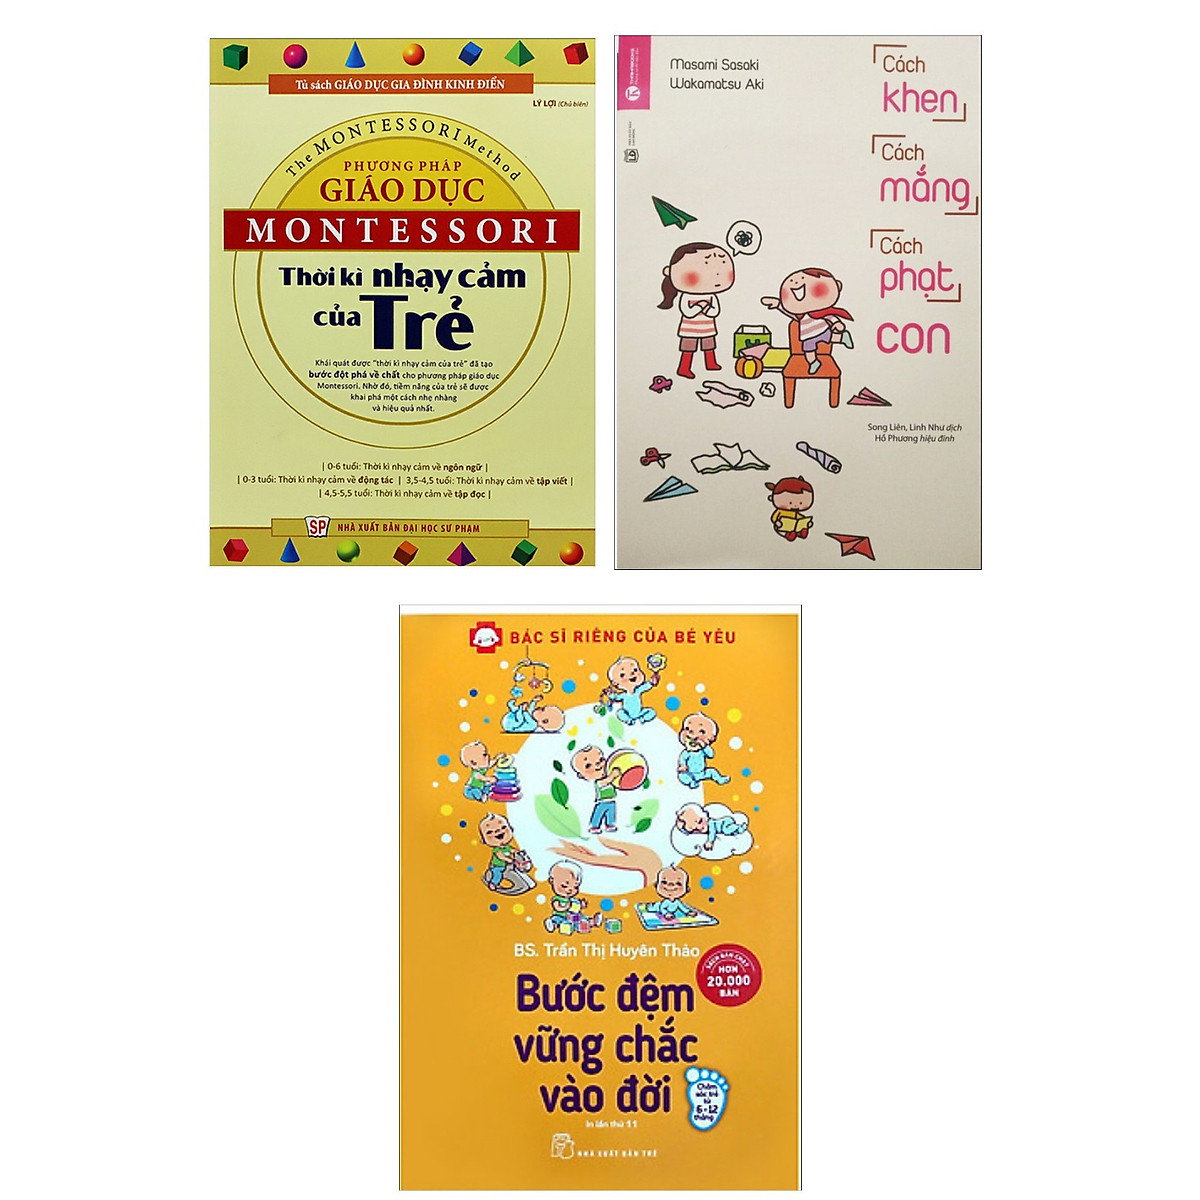 Combo 3 Cuốn Cẩm Nang Dạy Con Trẻ: Phương Pháp Giáo Dục Montessori - Thời Kỳ Nhạy Cảm Của Trẻ + Cách Khen, Cách Mắng, Cách Phạt Con + Bác Sĩ Riêng Của Bé Yêu - Bước Đệm Vững Chắc Vào Đời